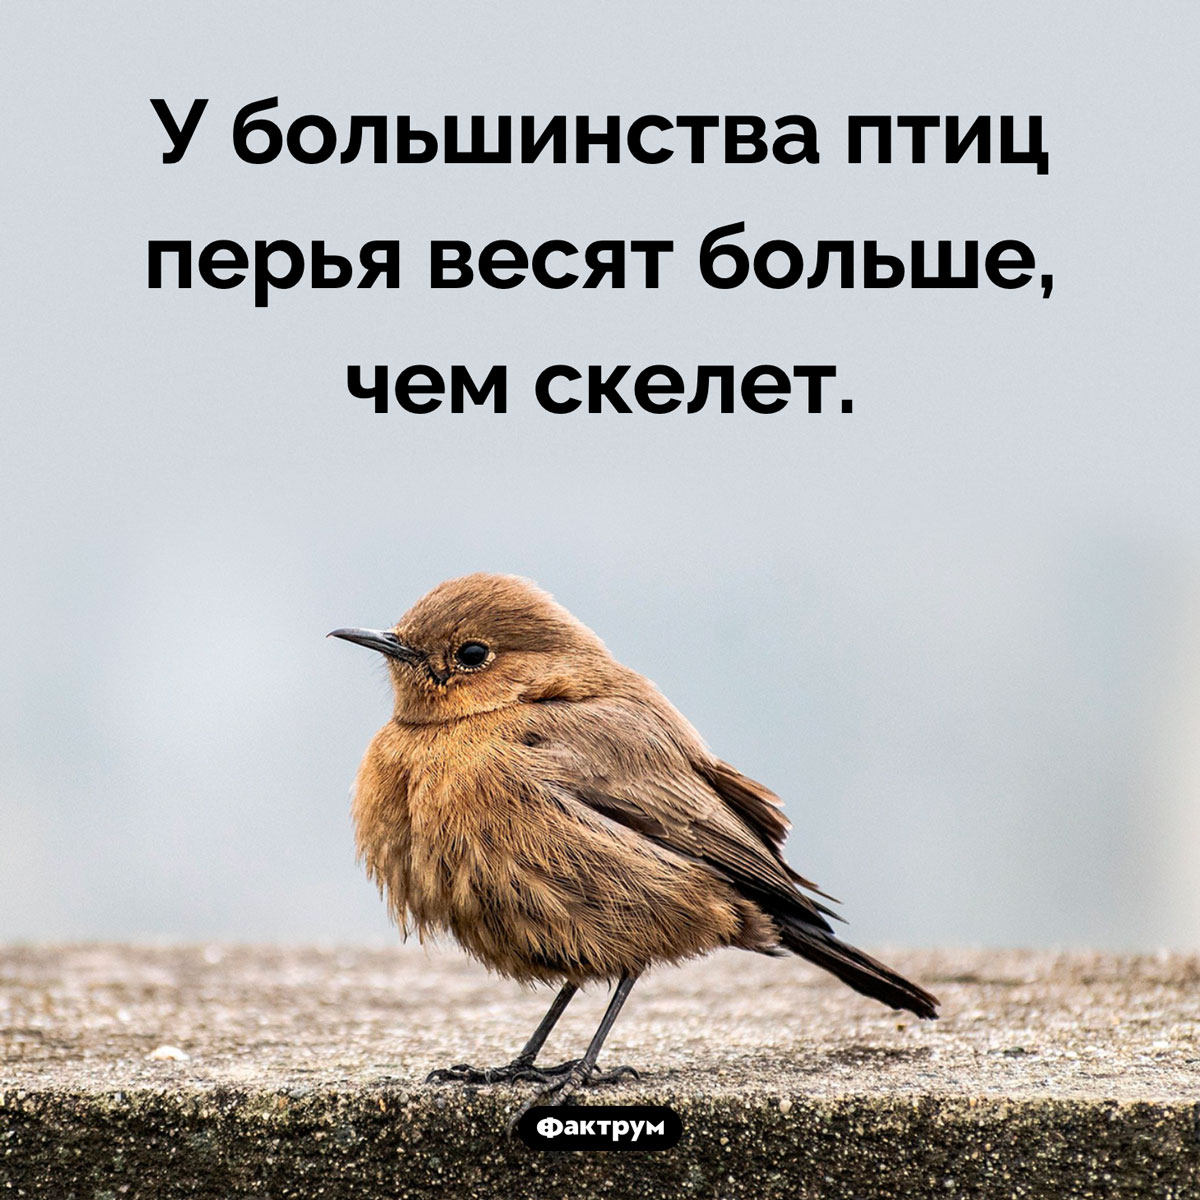 Перья птиц. У большинства птиц перья весят больше, чем скелет.